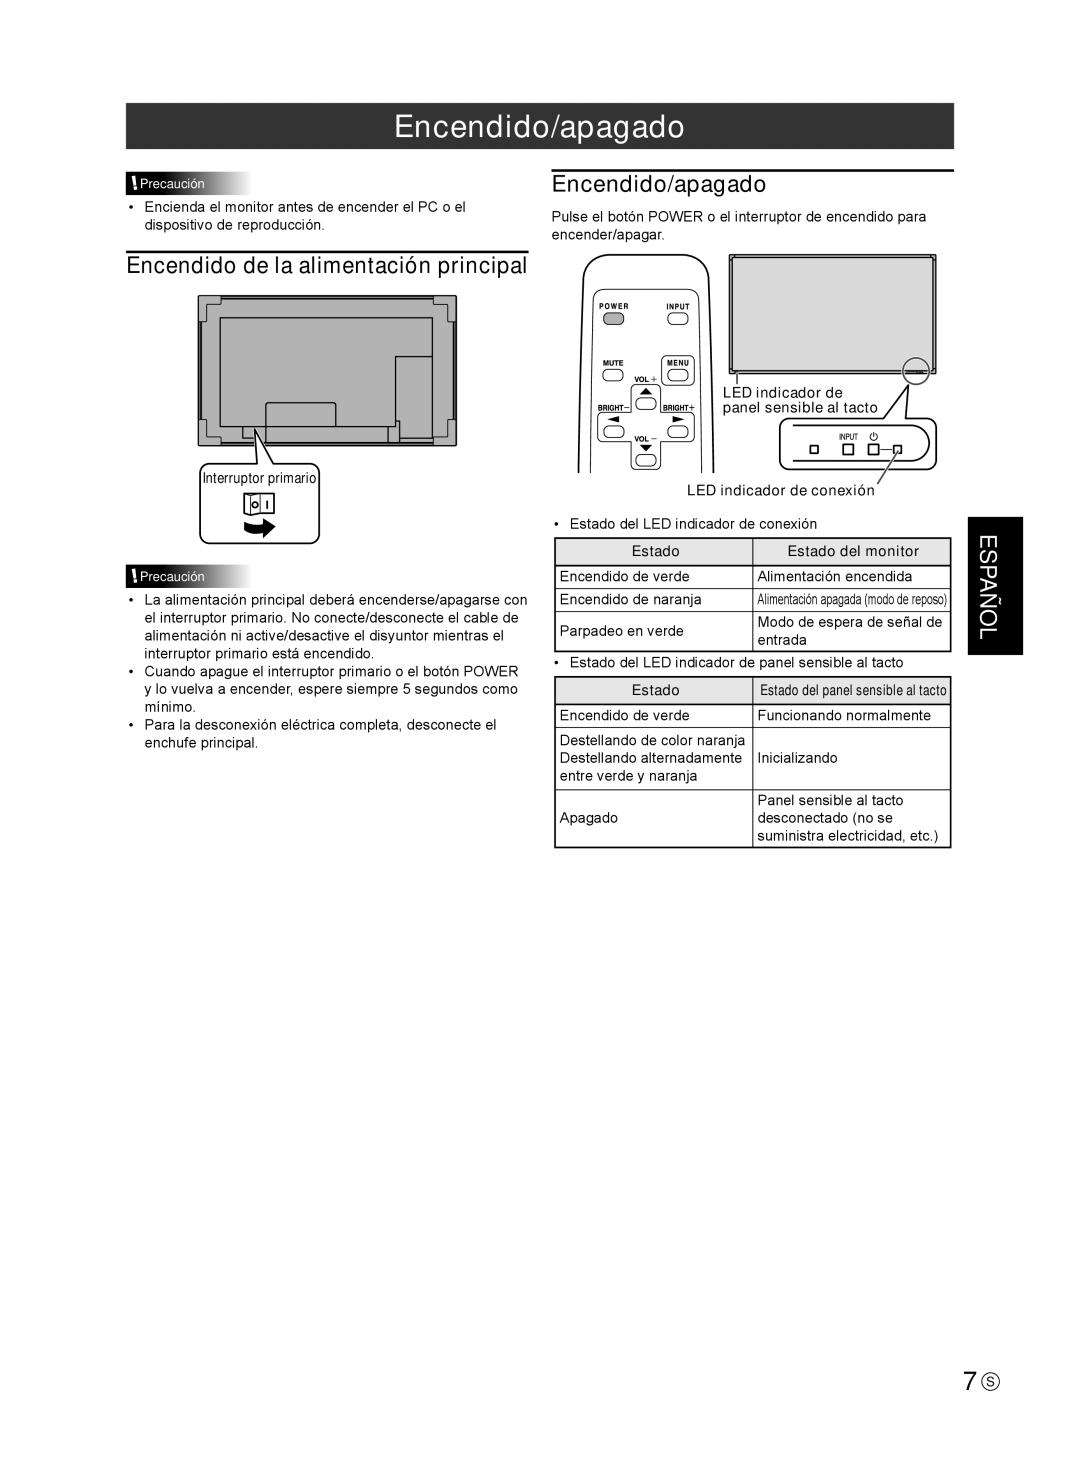 Sharp TINSE1181MPZZ(2) Encendido/apagado, Español, Encendido de la alimentación principal, Interruptor primario, Estado 